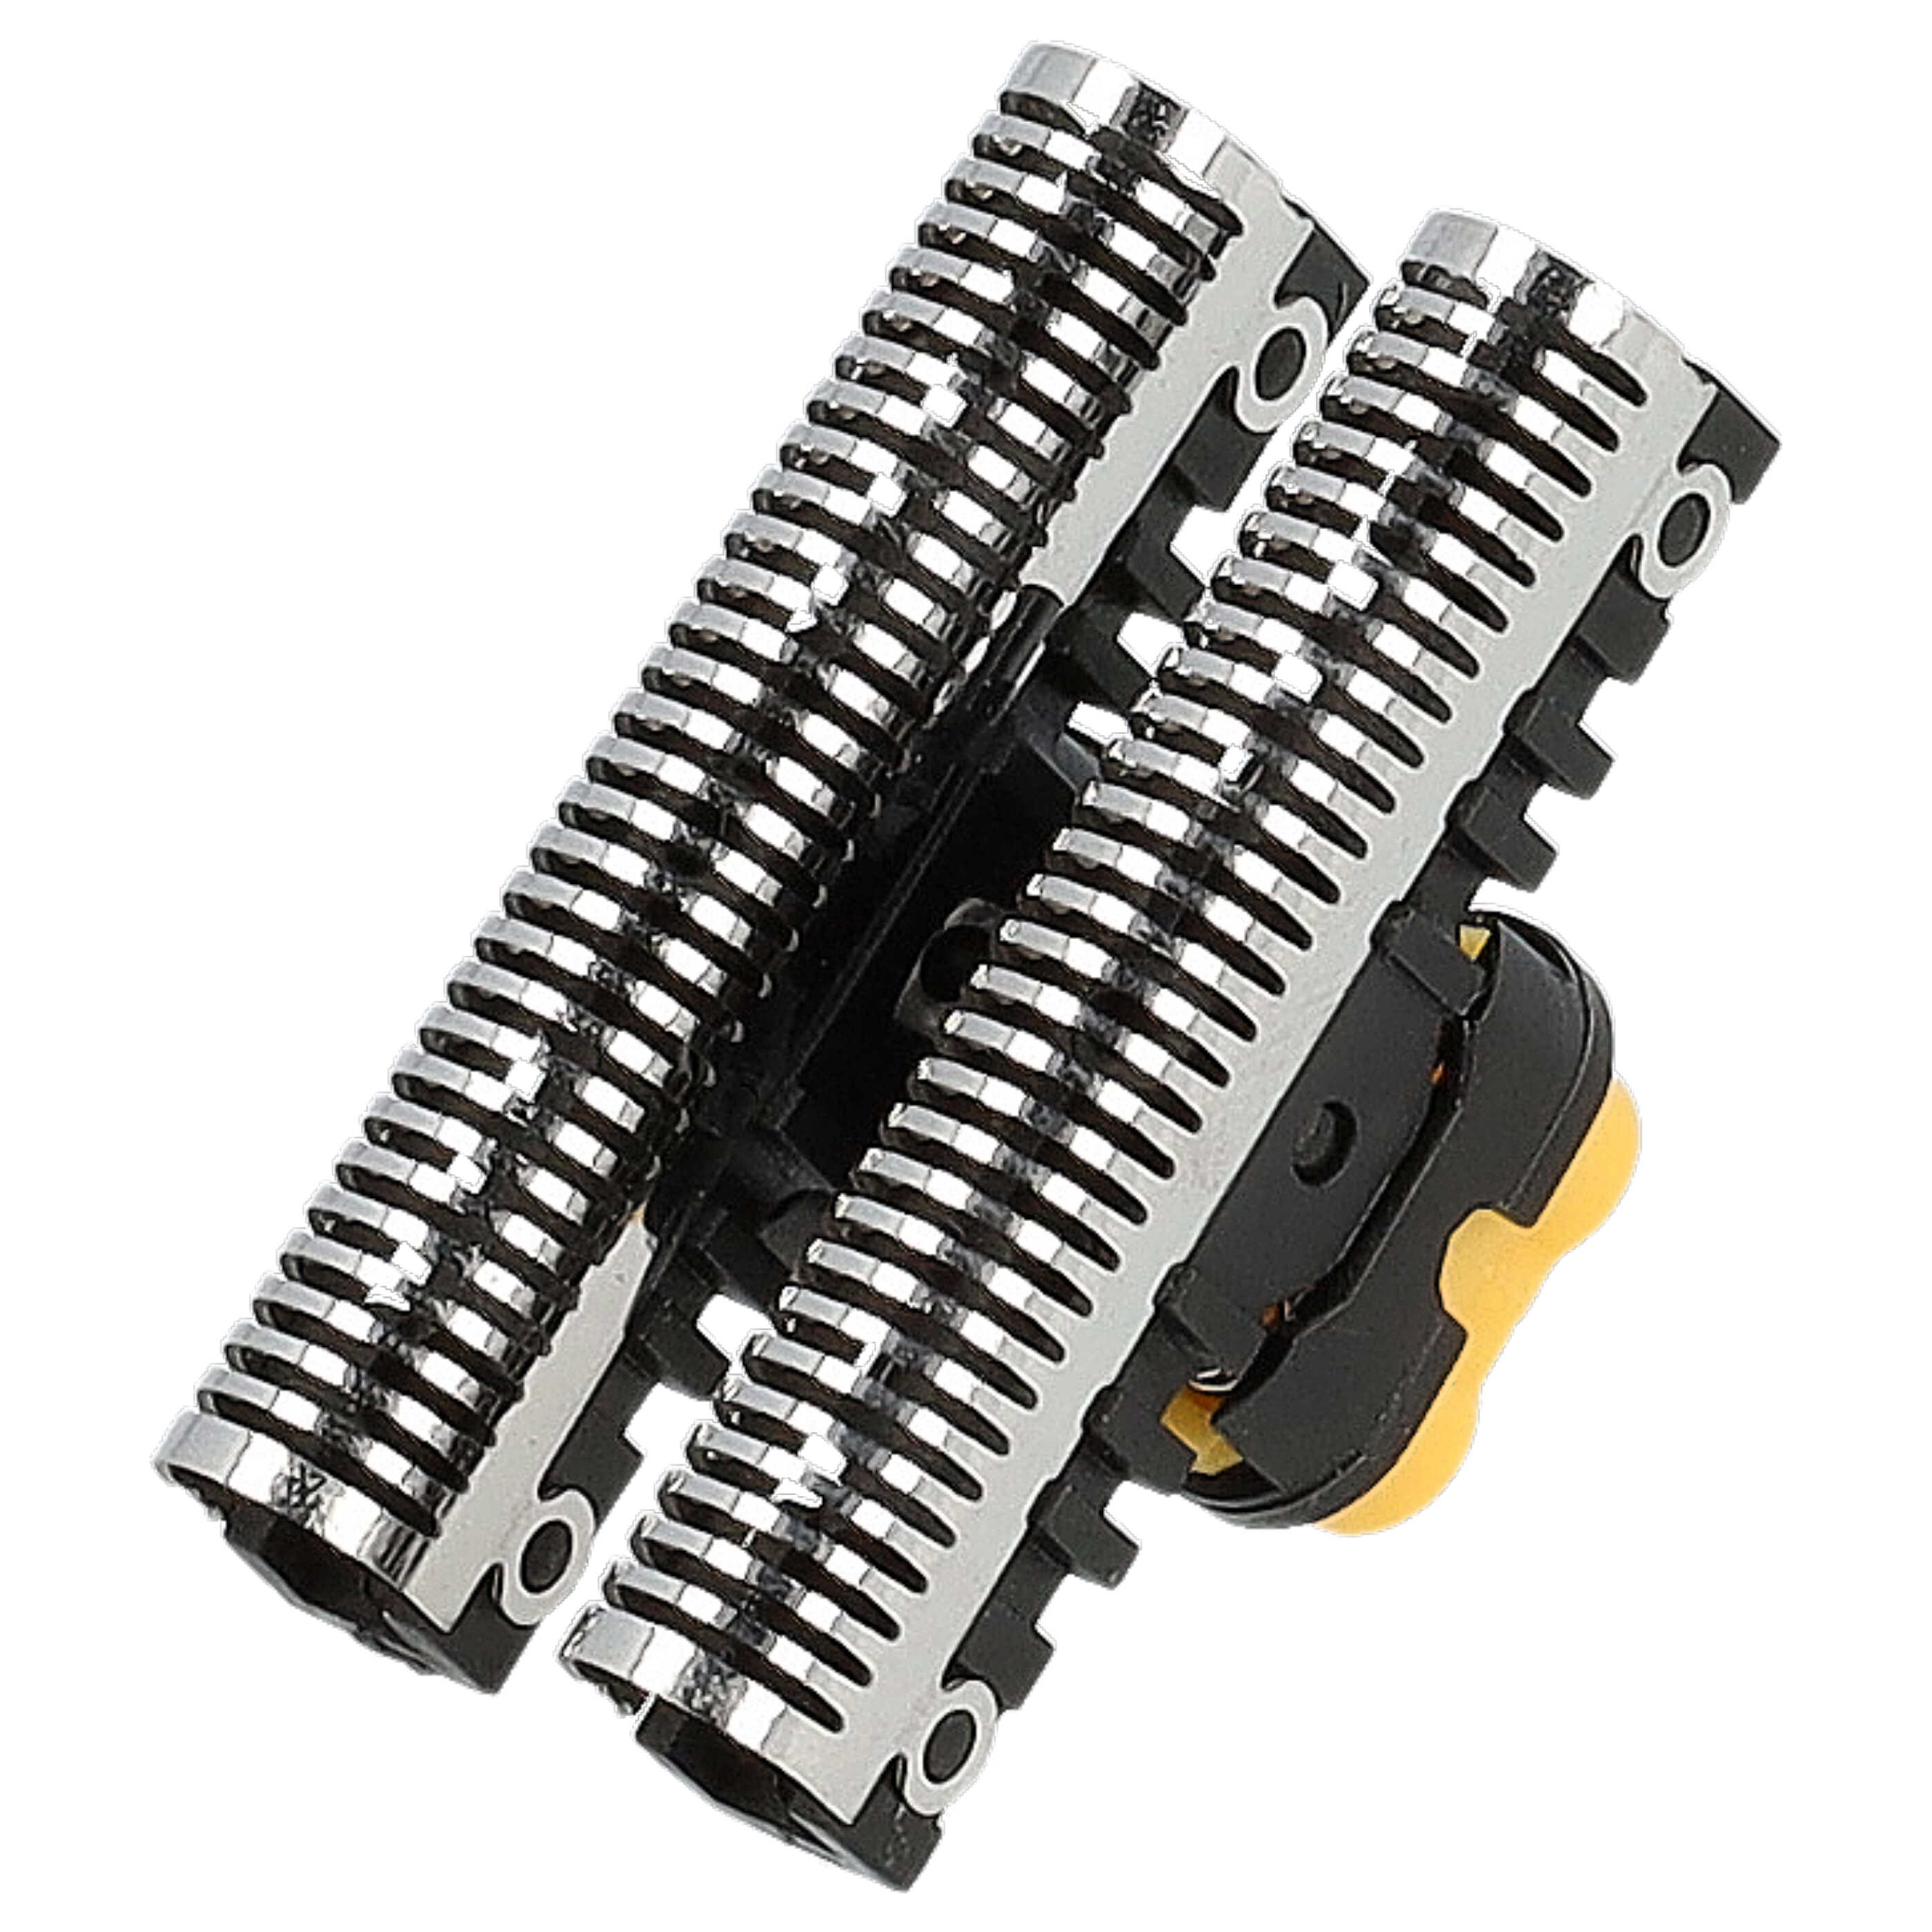 Combipack remplace Braun 51B, 51S pour rasoir Braun - grille + couteaux, noir/argenté